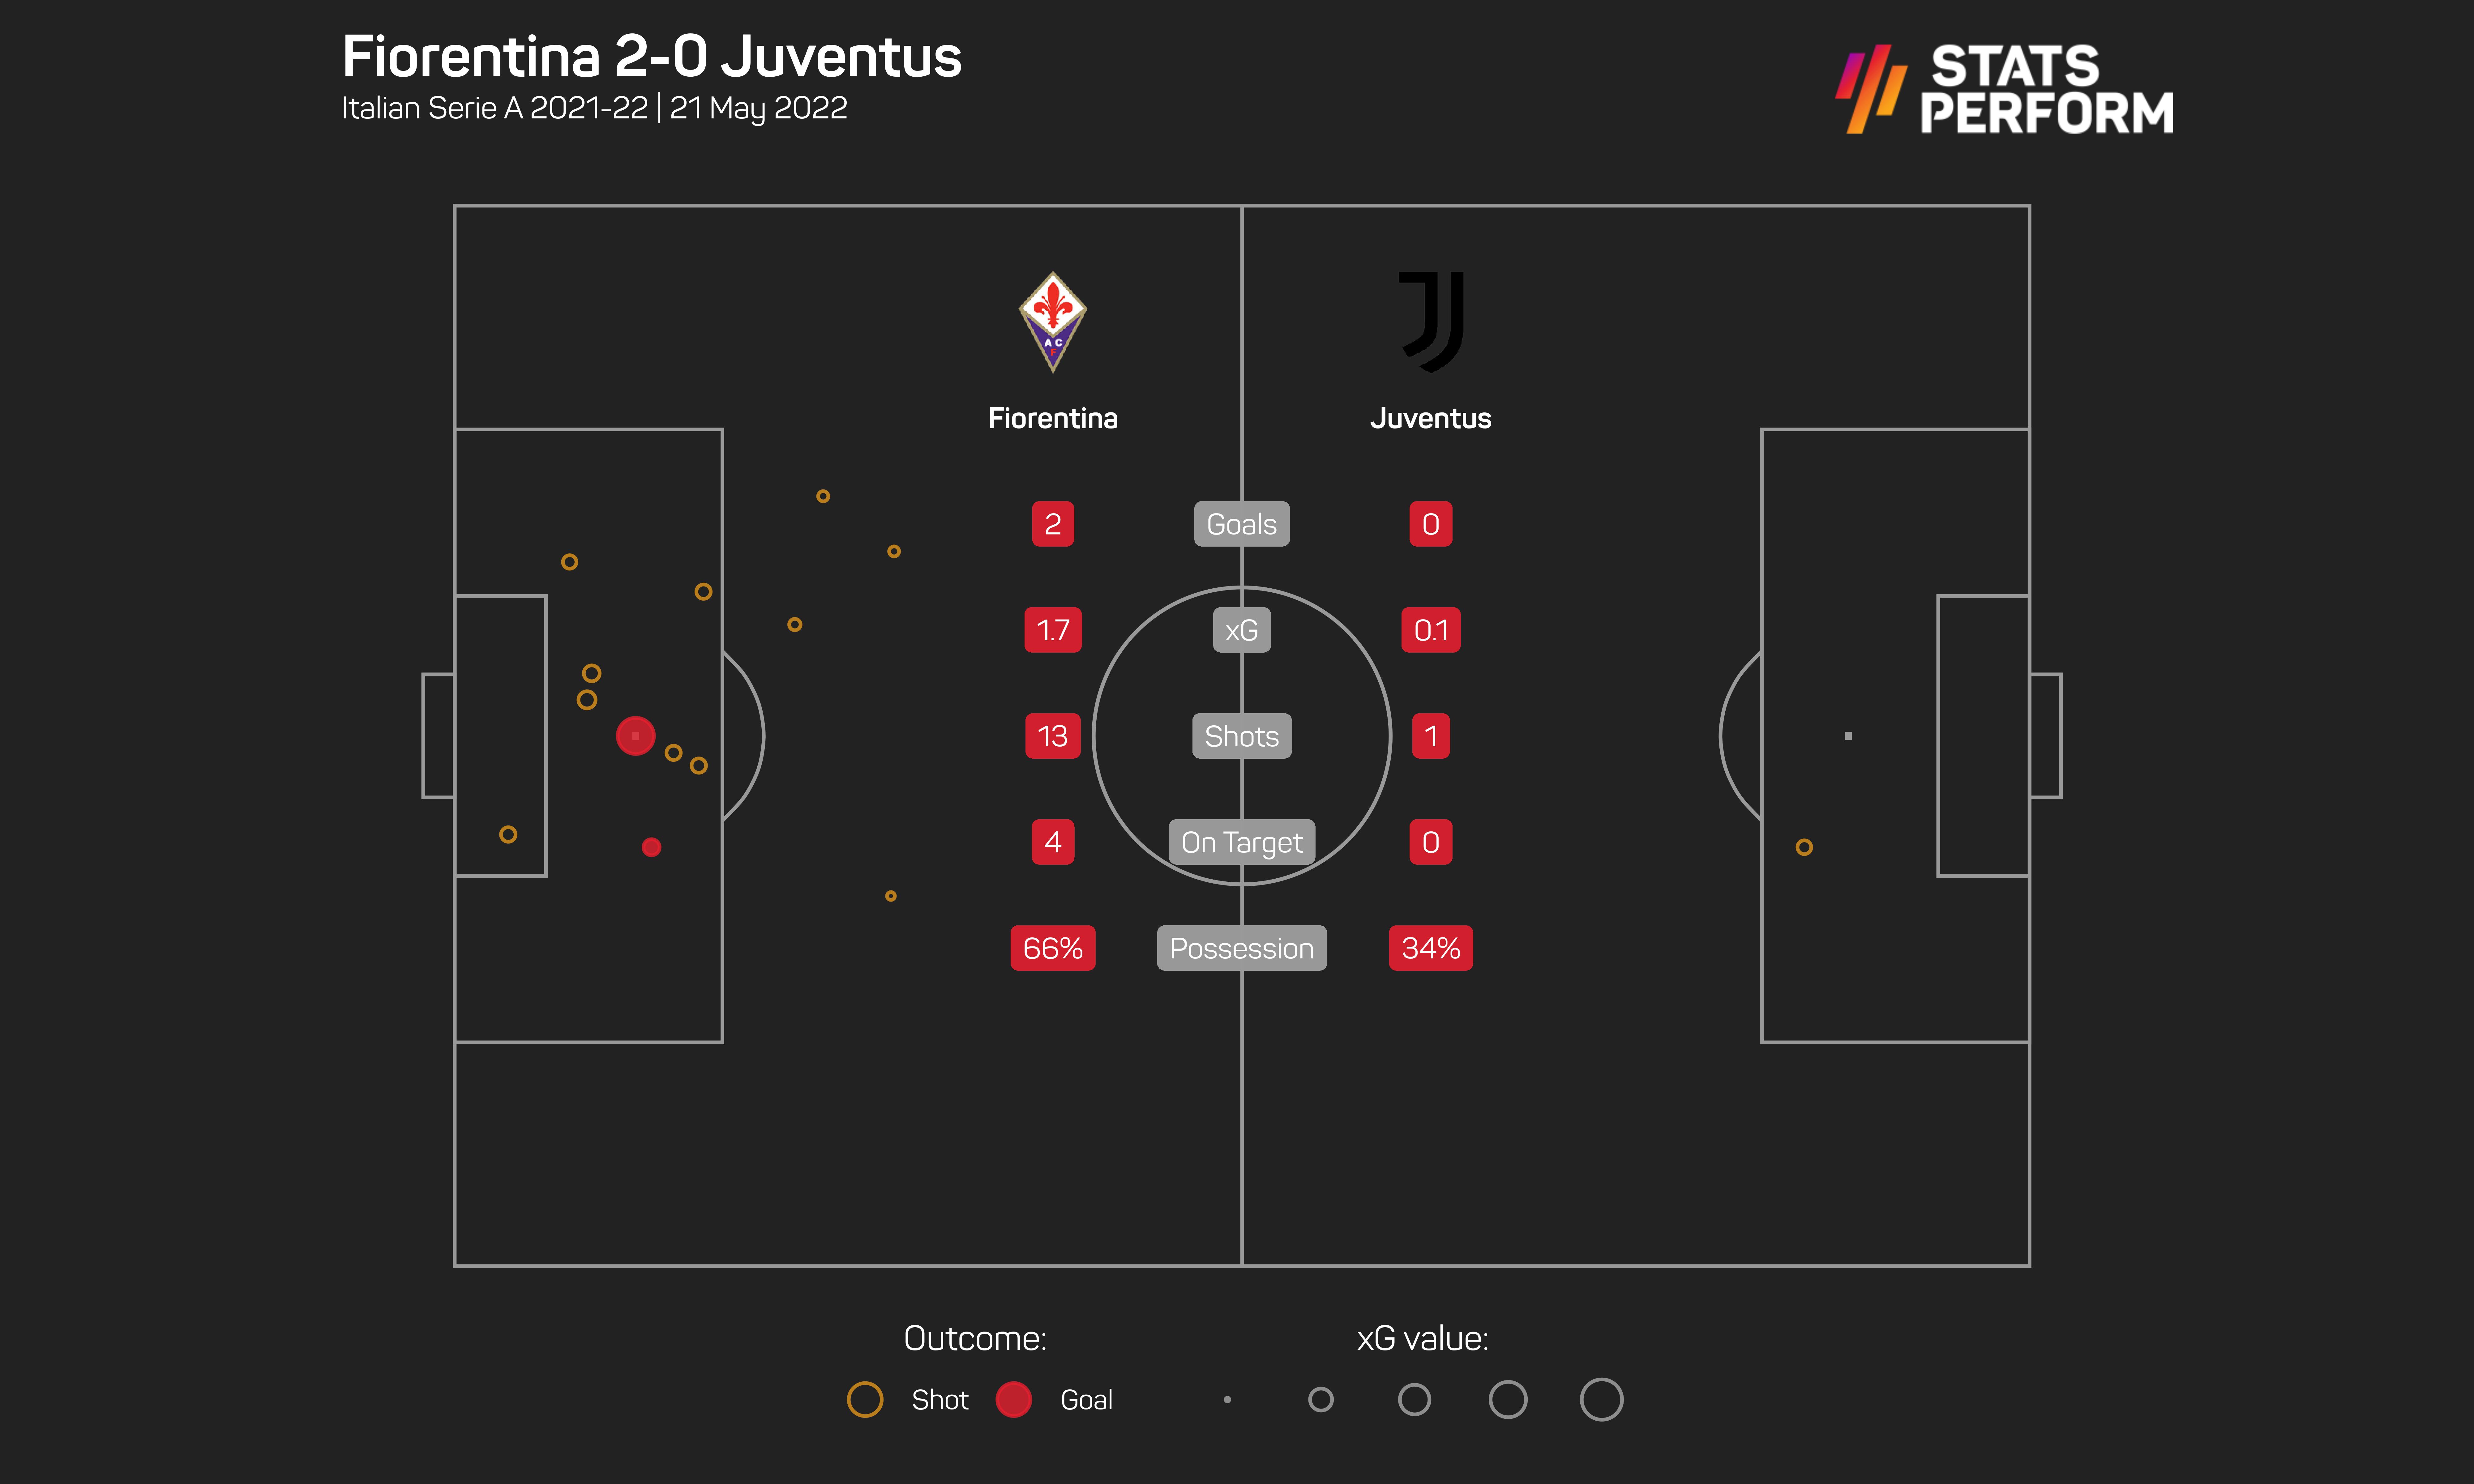 Fiorentina 2-0 Juventus